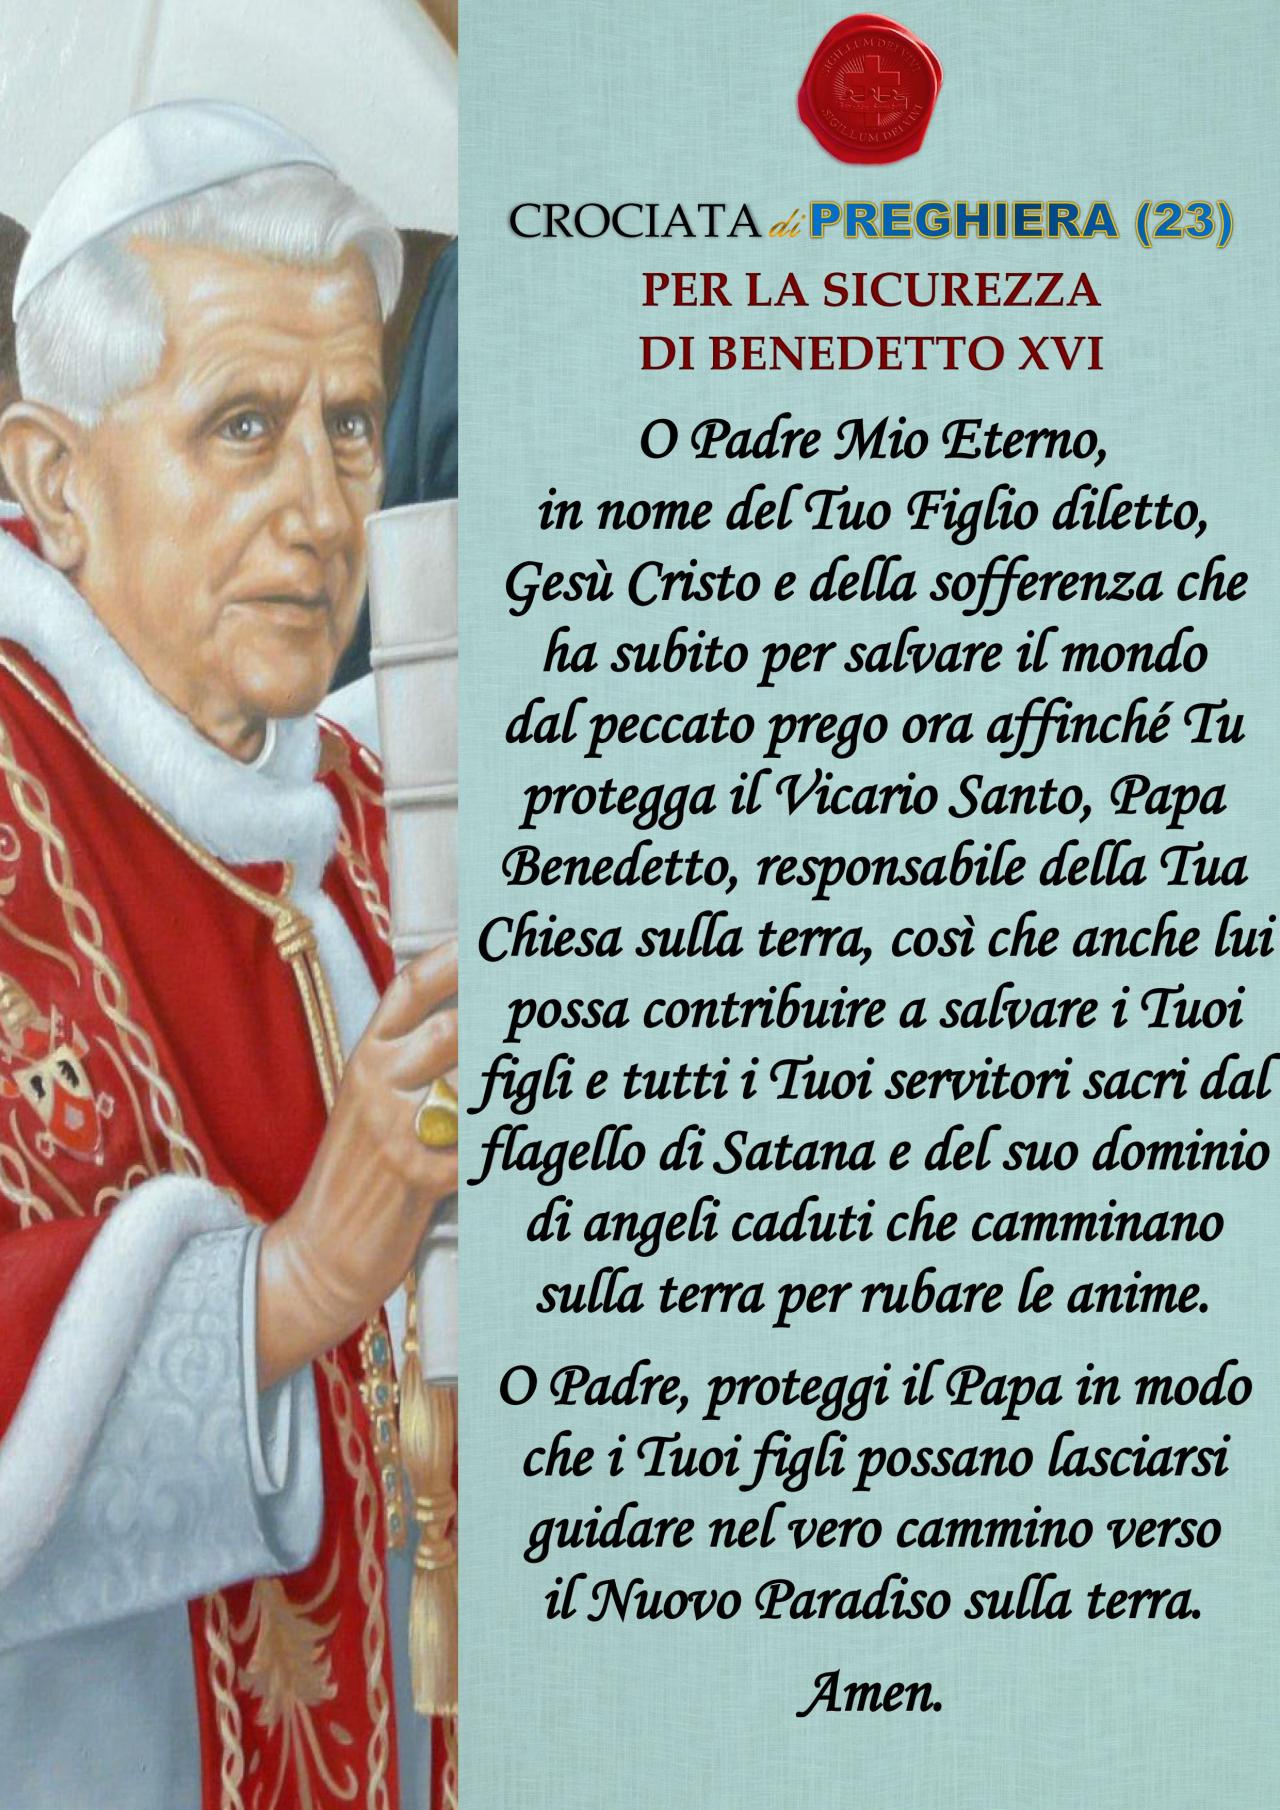 Crociata di preghiera 23 Per la sicurezza di Benedetto XVI
Preghiamo per il Papa, nel web si dice che avrebbe qualche problema di salute.